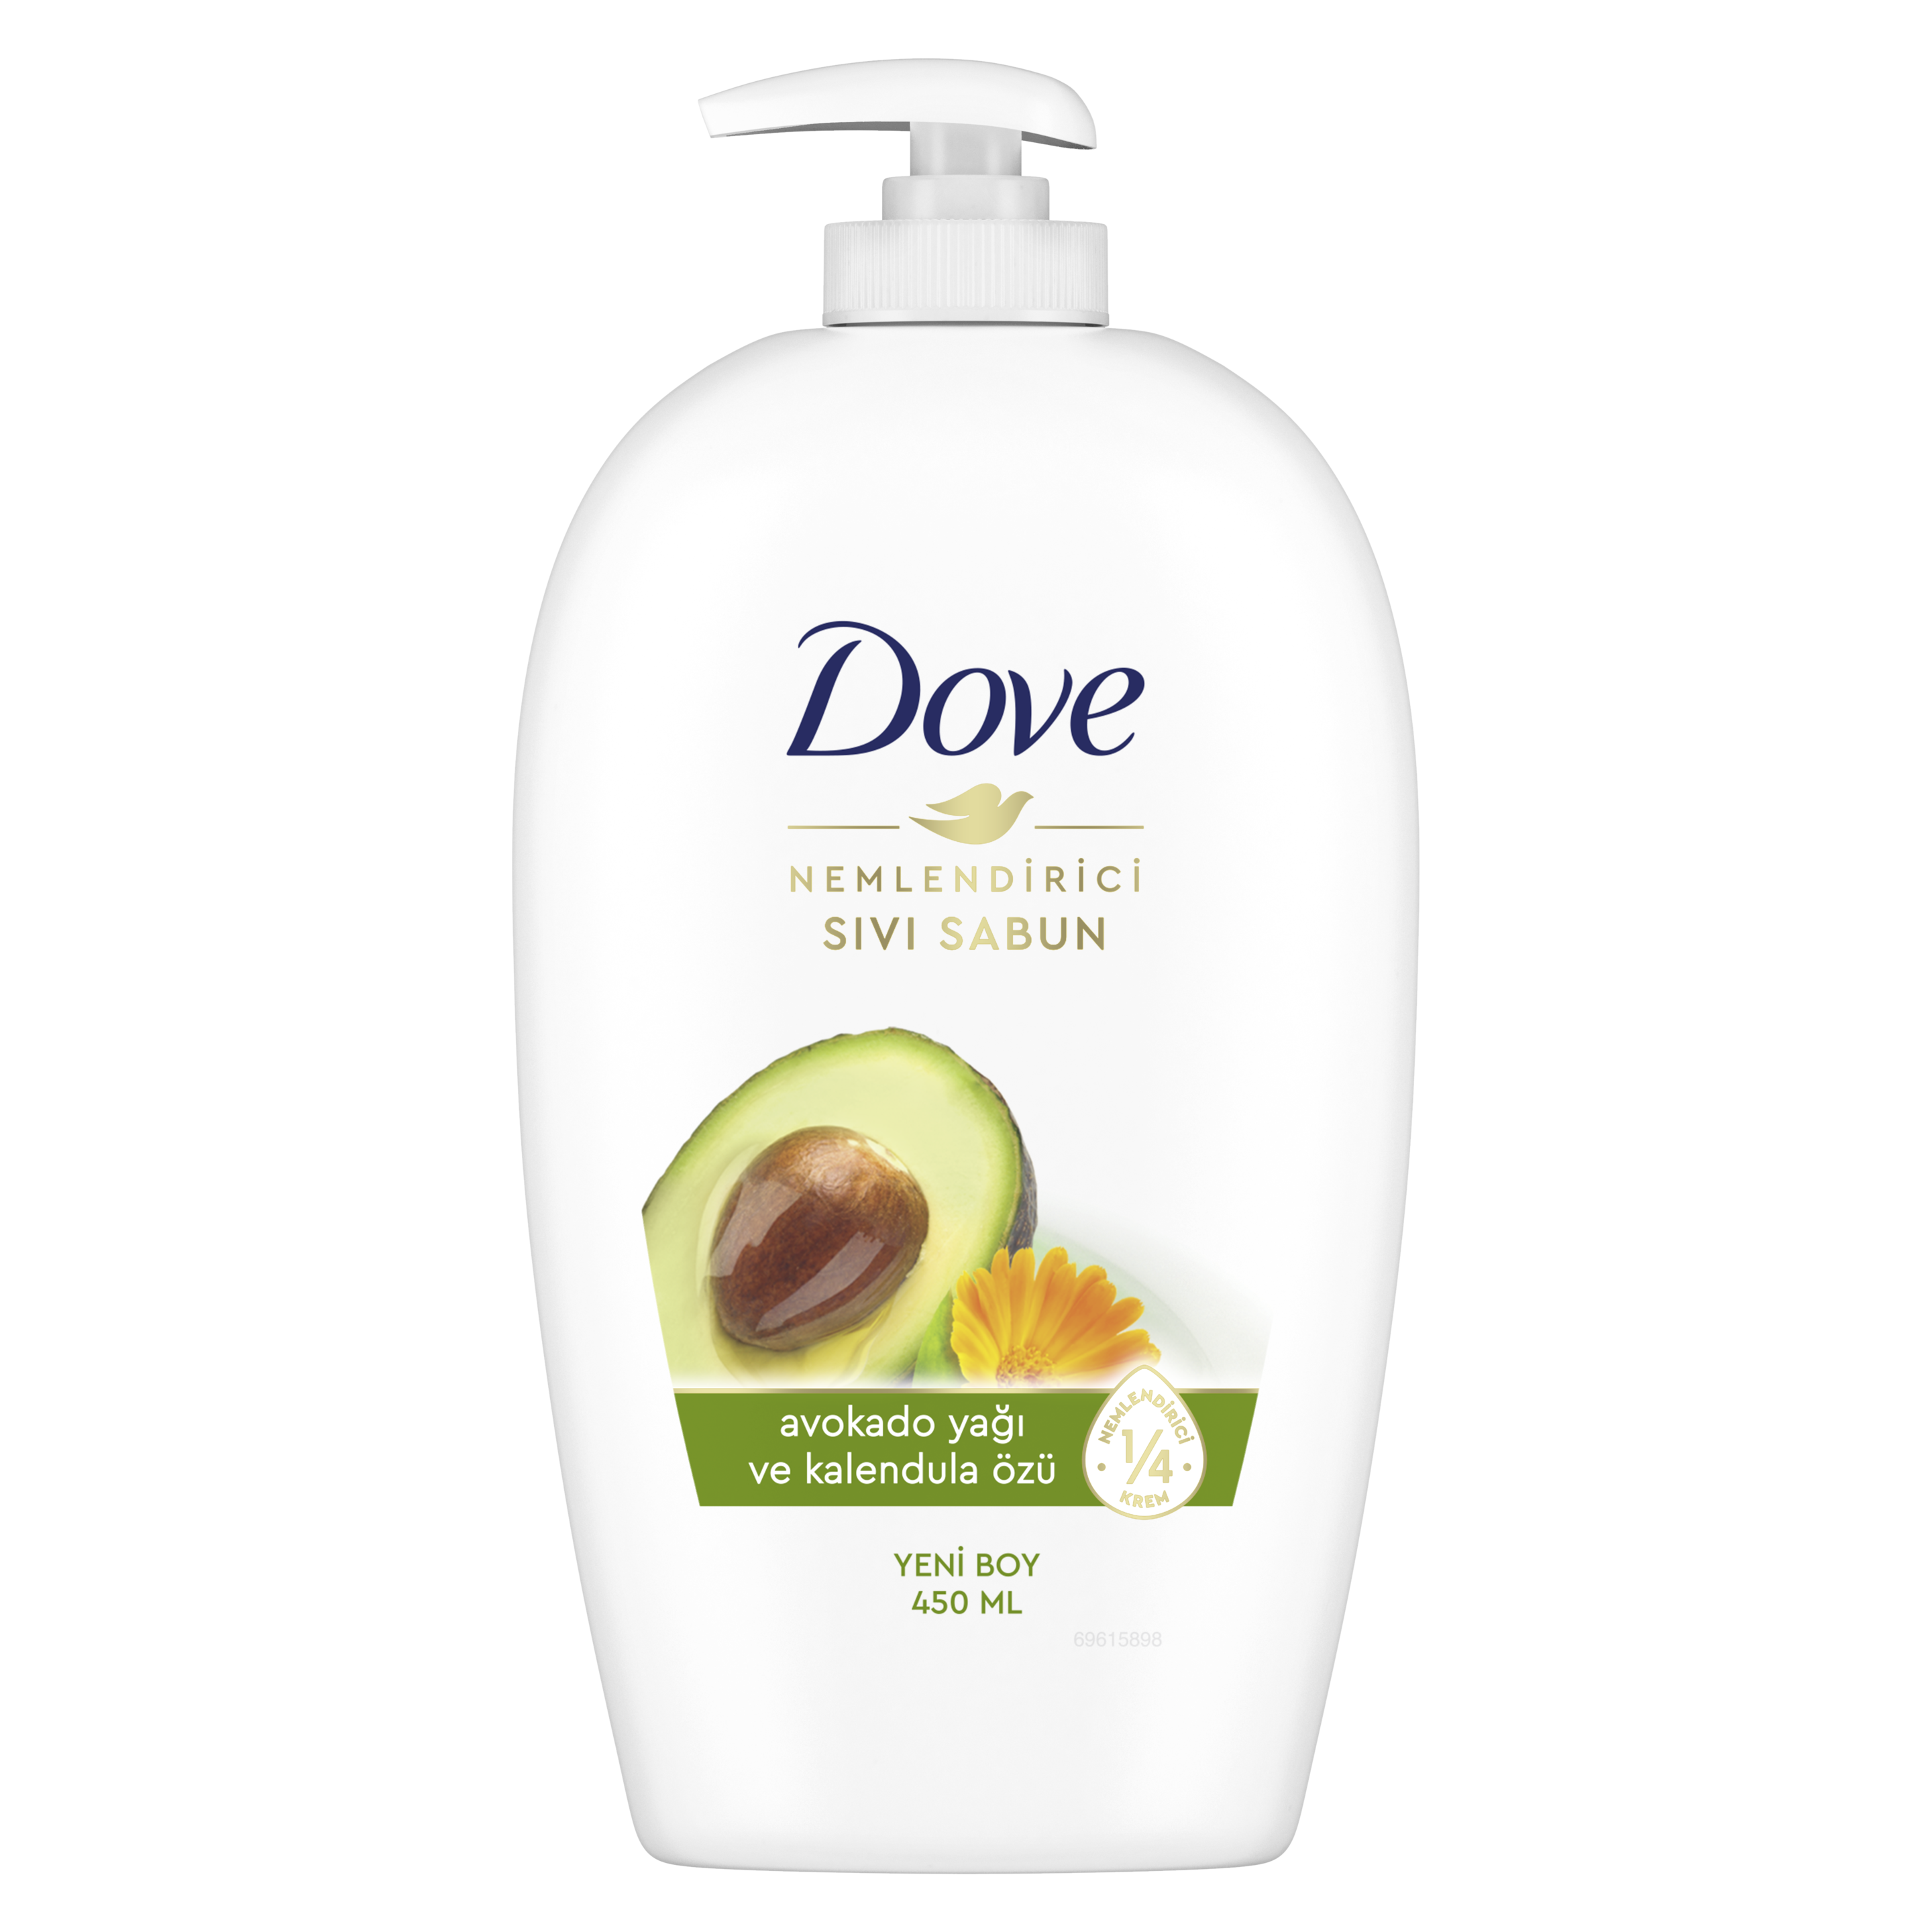 Dove Avokado Yağı ve Kalendula Özlü Nemlendirici Sıvı Sabun 450 ml